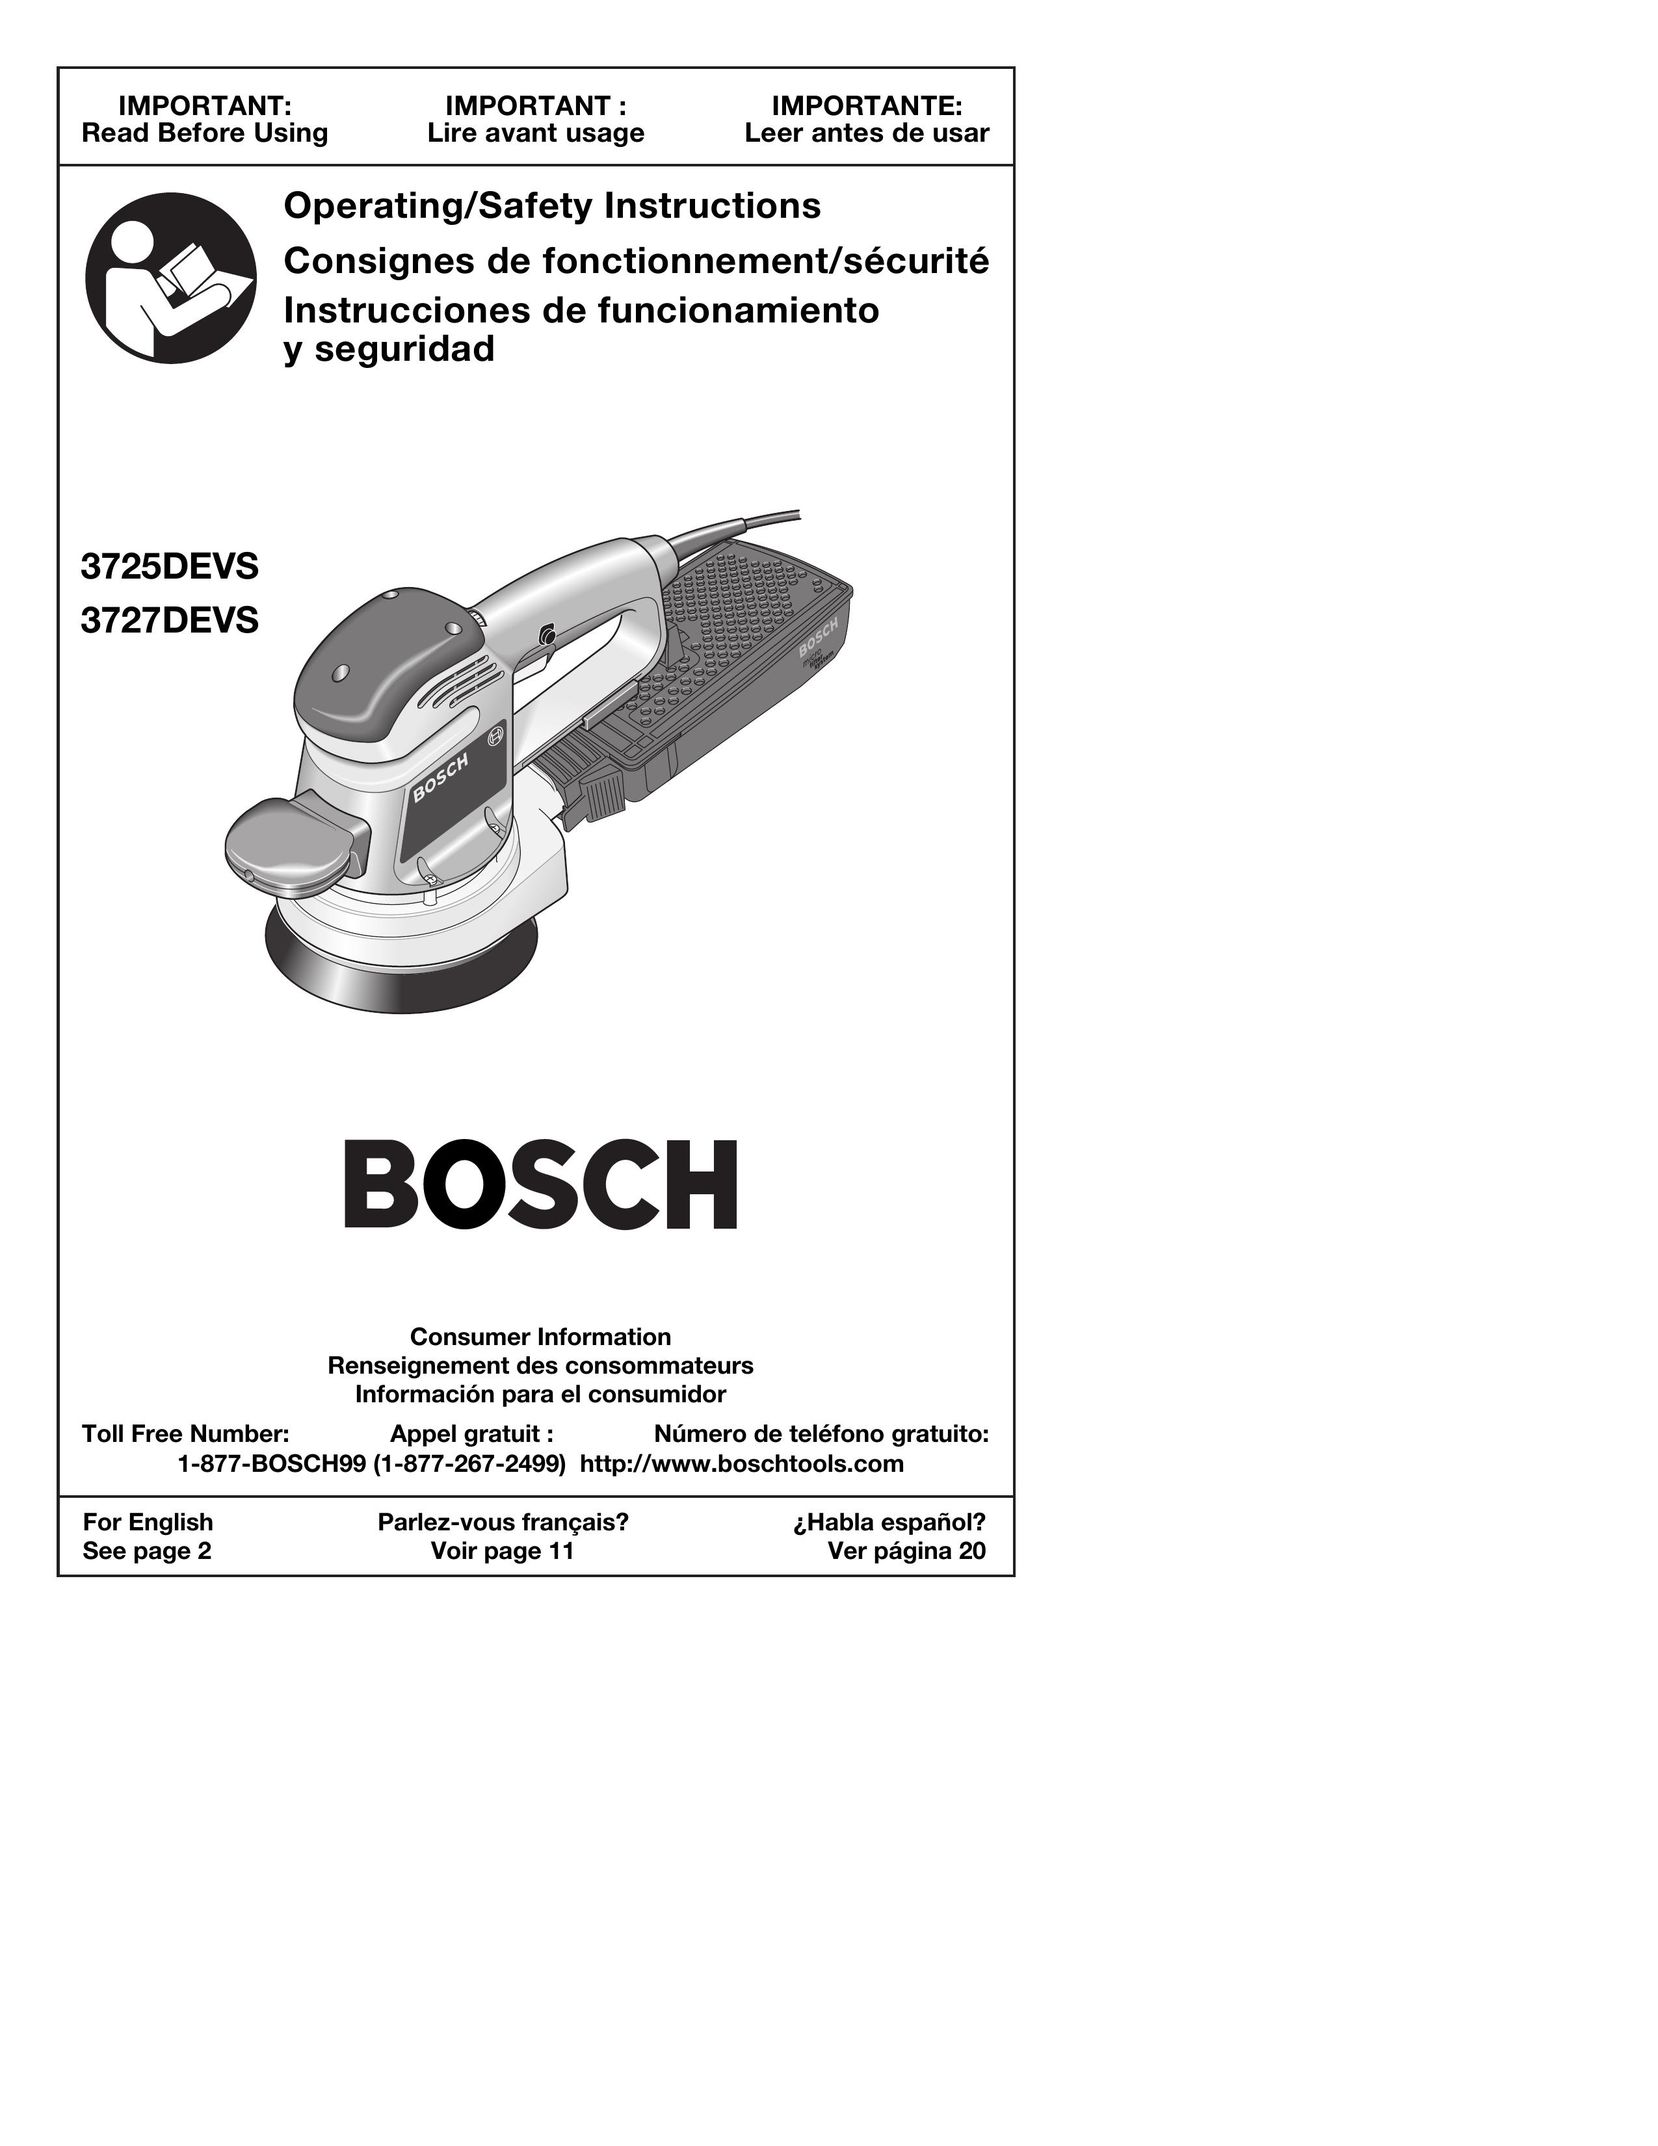 Bosch Power Tools 3725DEVS Sander User Manual